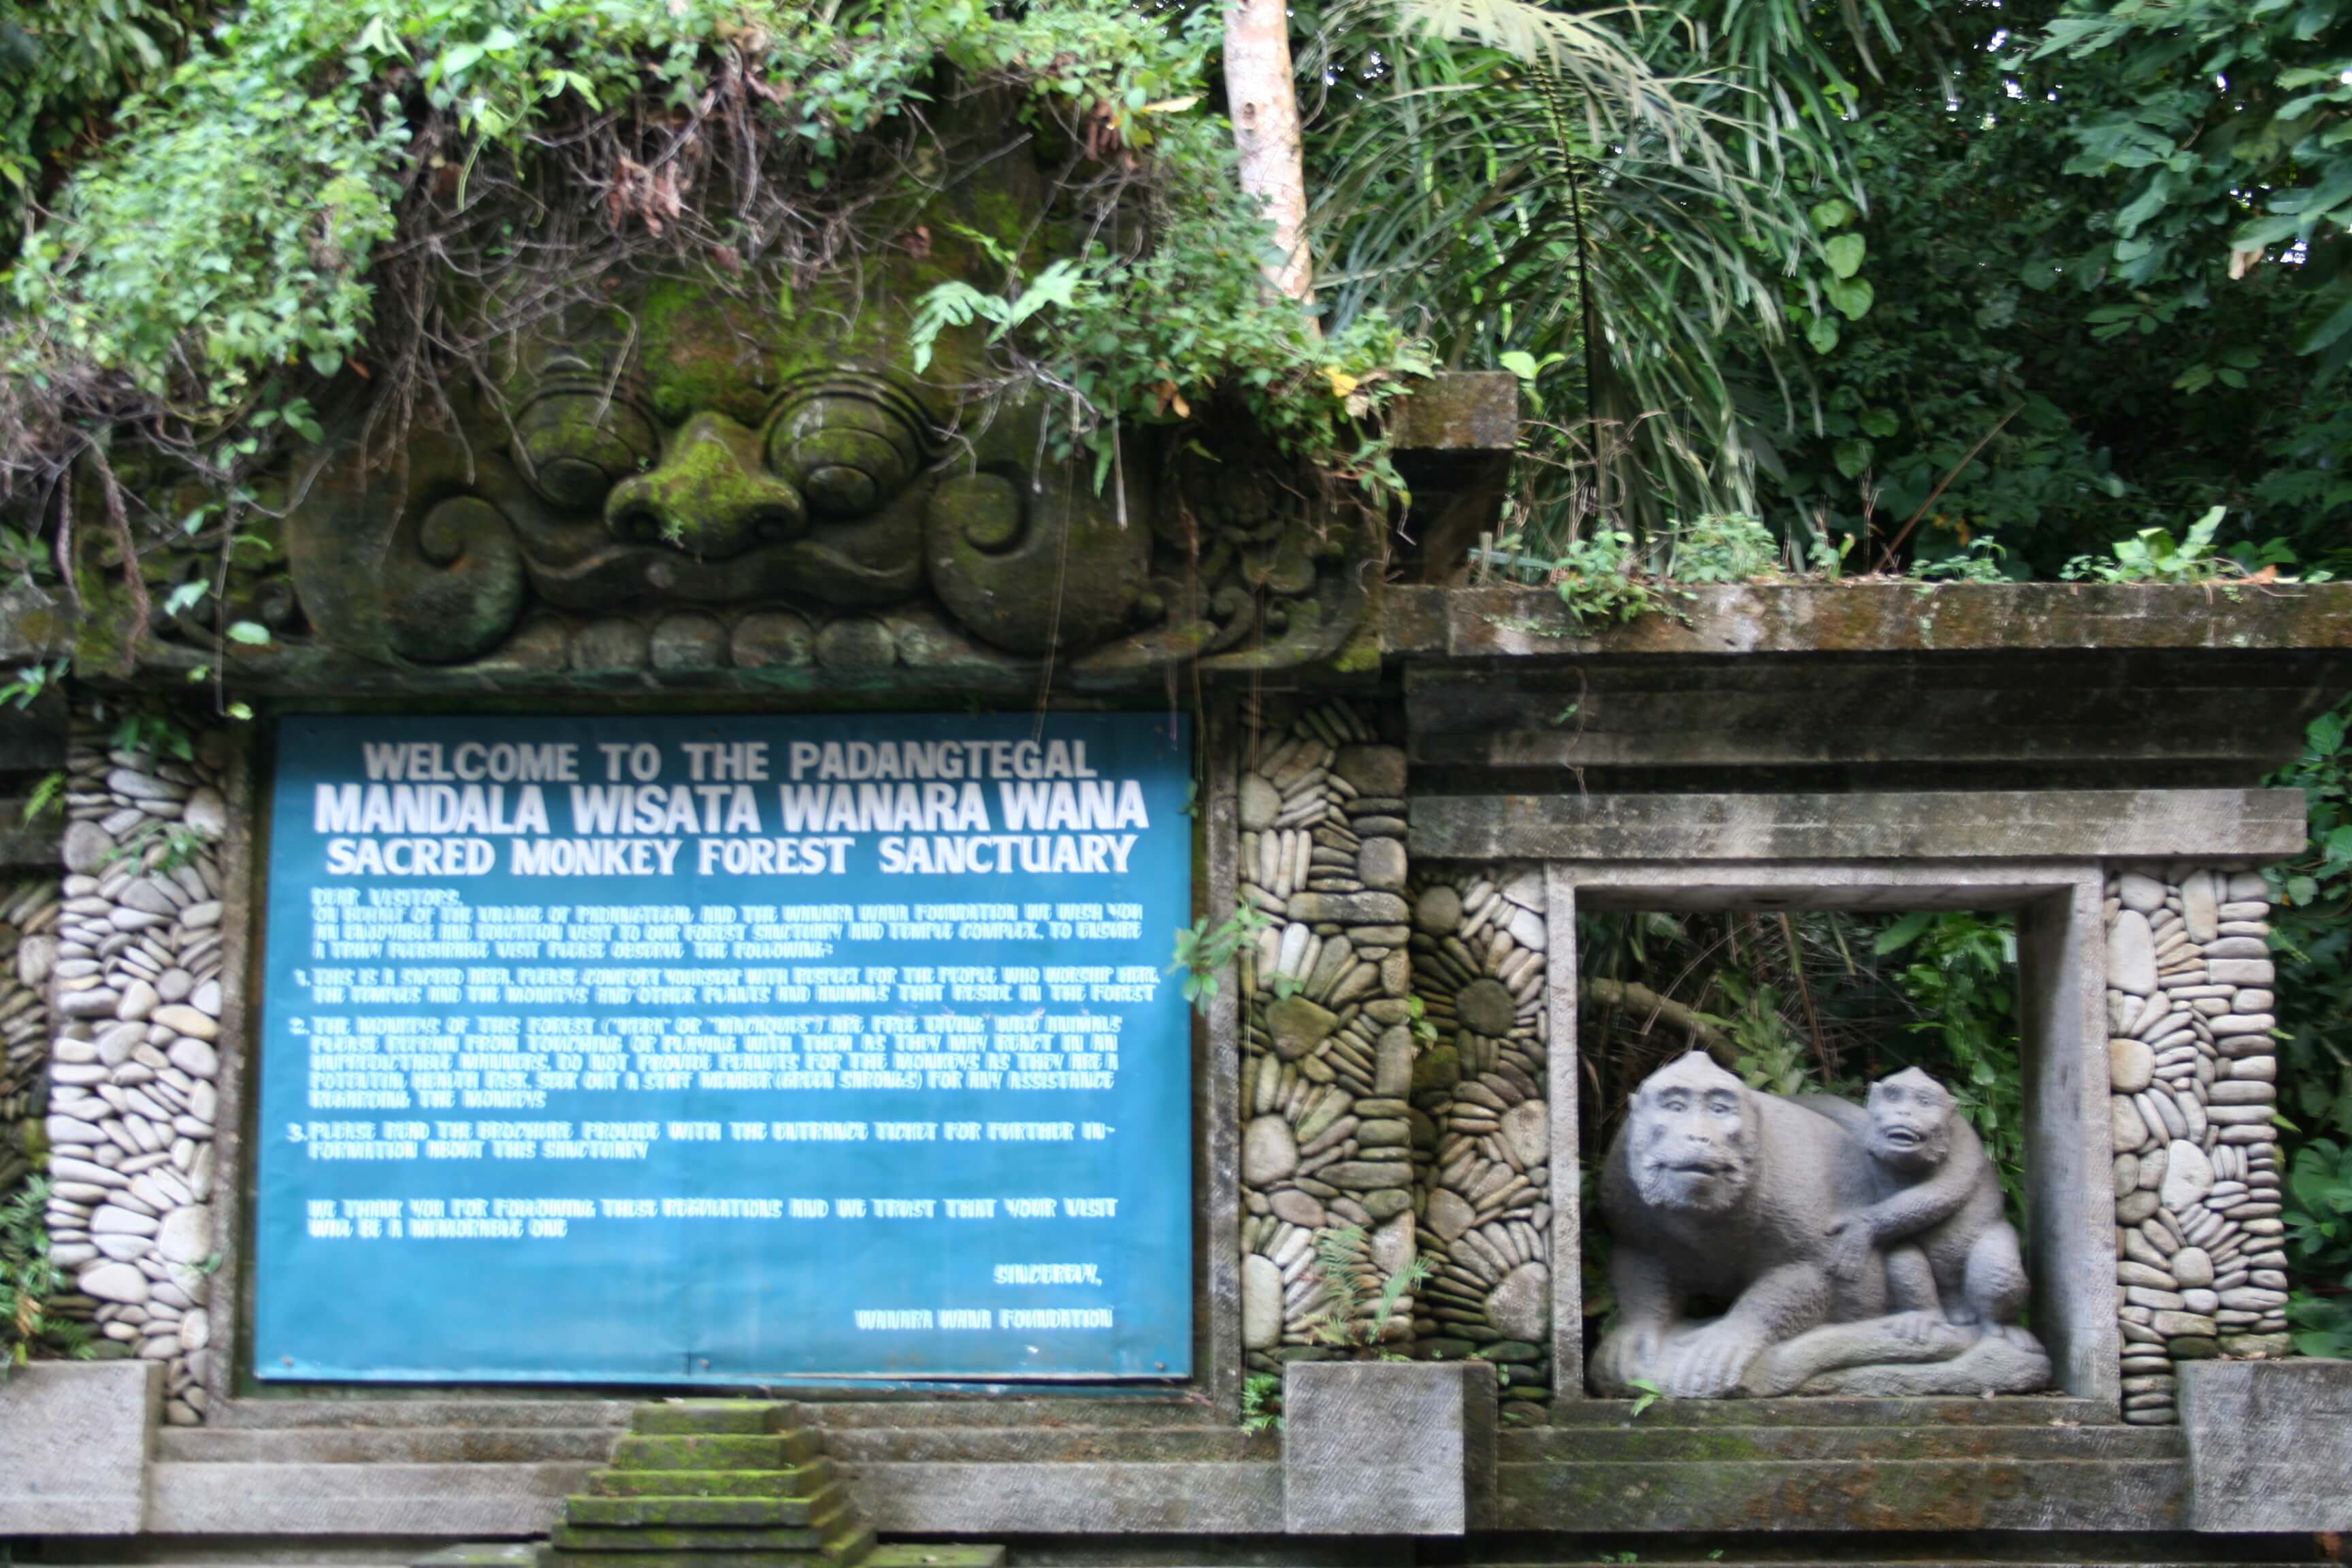 Sacred monkey forest sanctuary